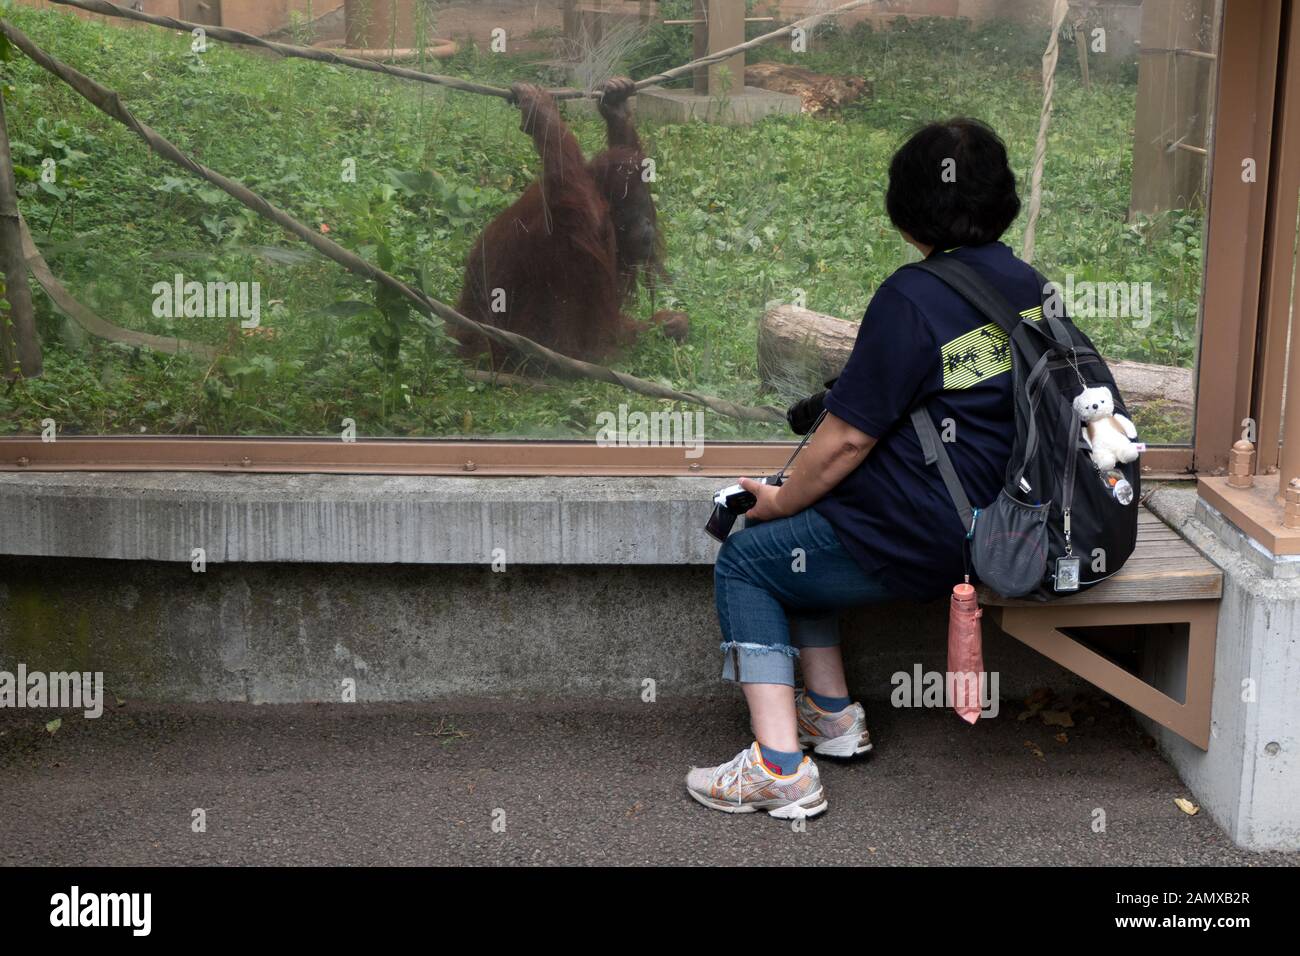 Orangutan (Pongo Pygmaeus) Allo Zoo Di Sapporo Maruyama A Sapporo, Hokkaido, Giappone, Asia. Visitatore che guarda il primate in gabbia di giardino zoologico giapponese Foto Stock